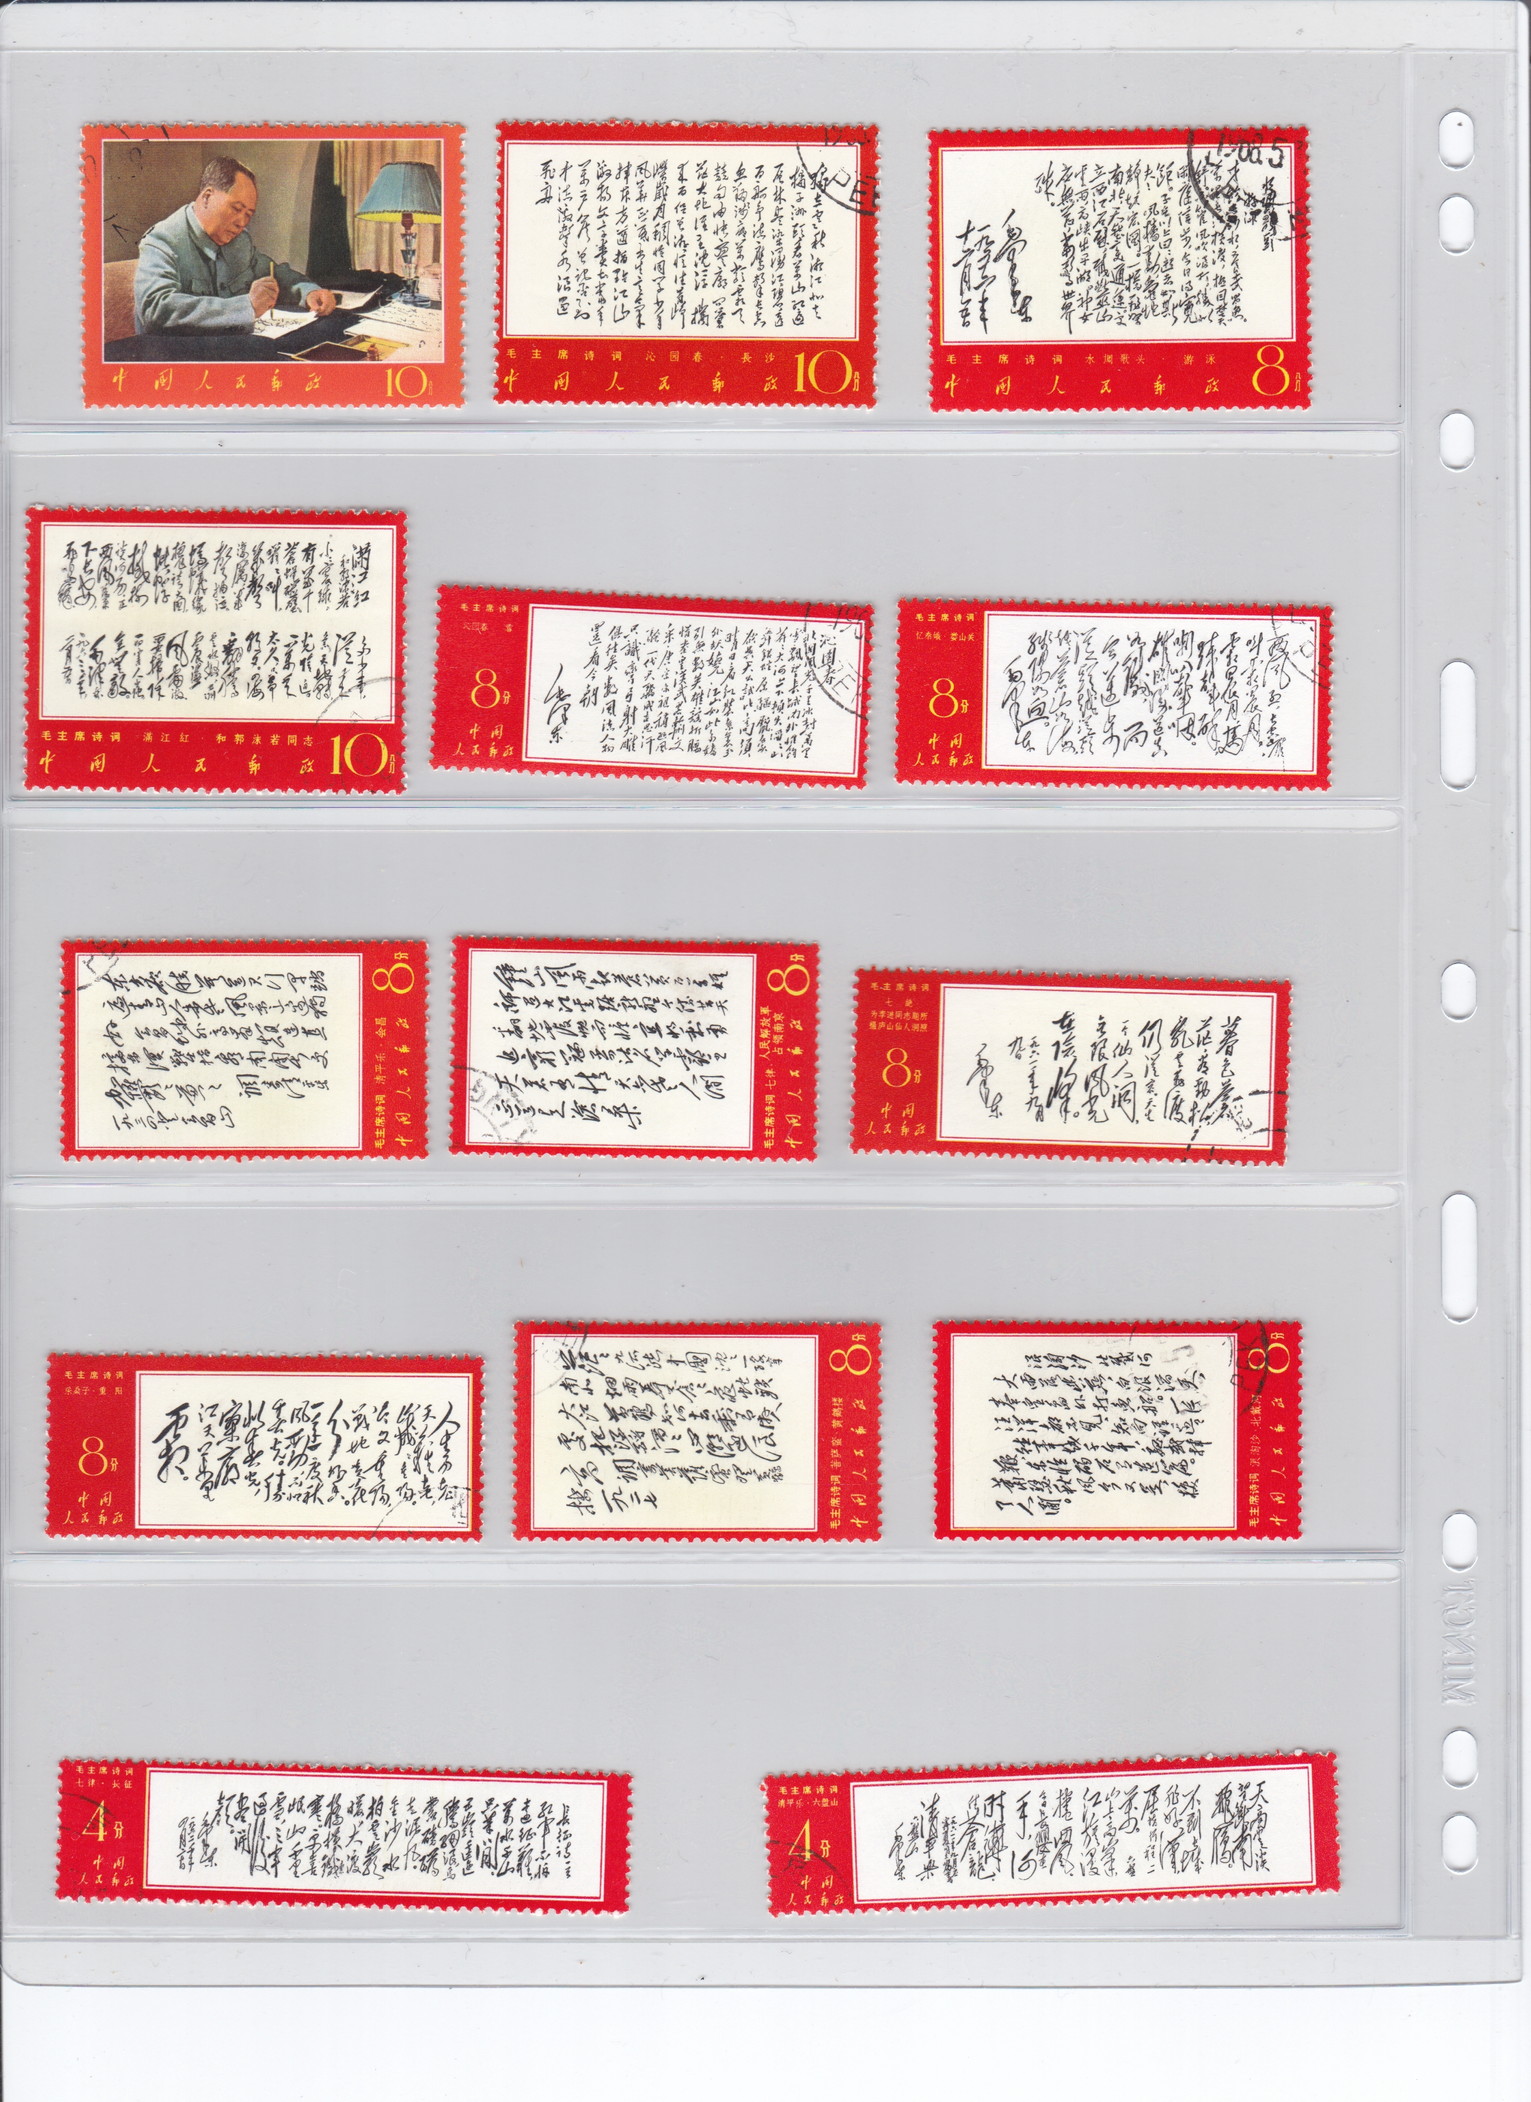 钱币博物馆| 中国切手文7毛主席〈詩詞〉 14枚消印あり